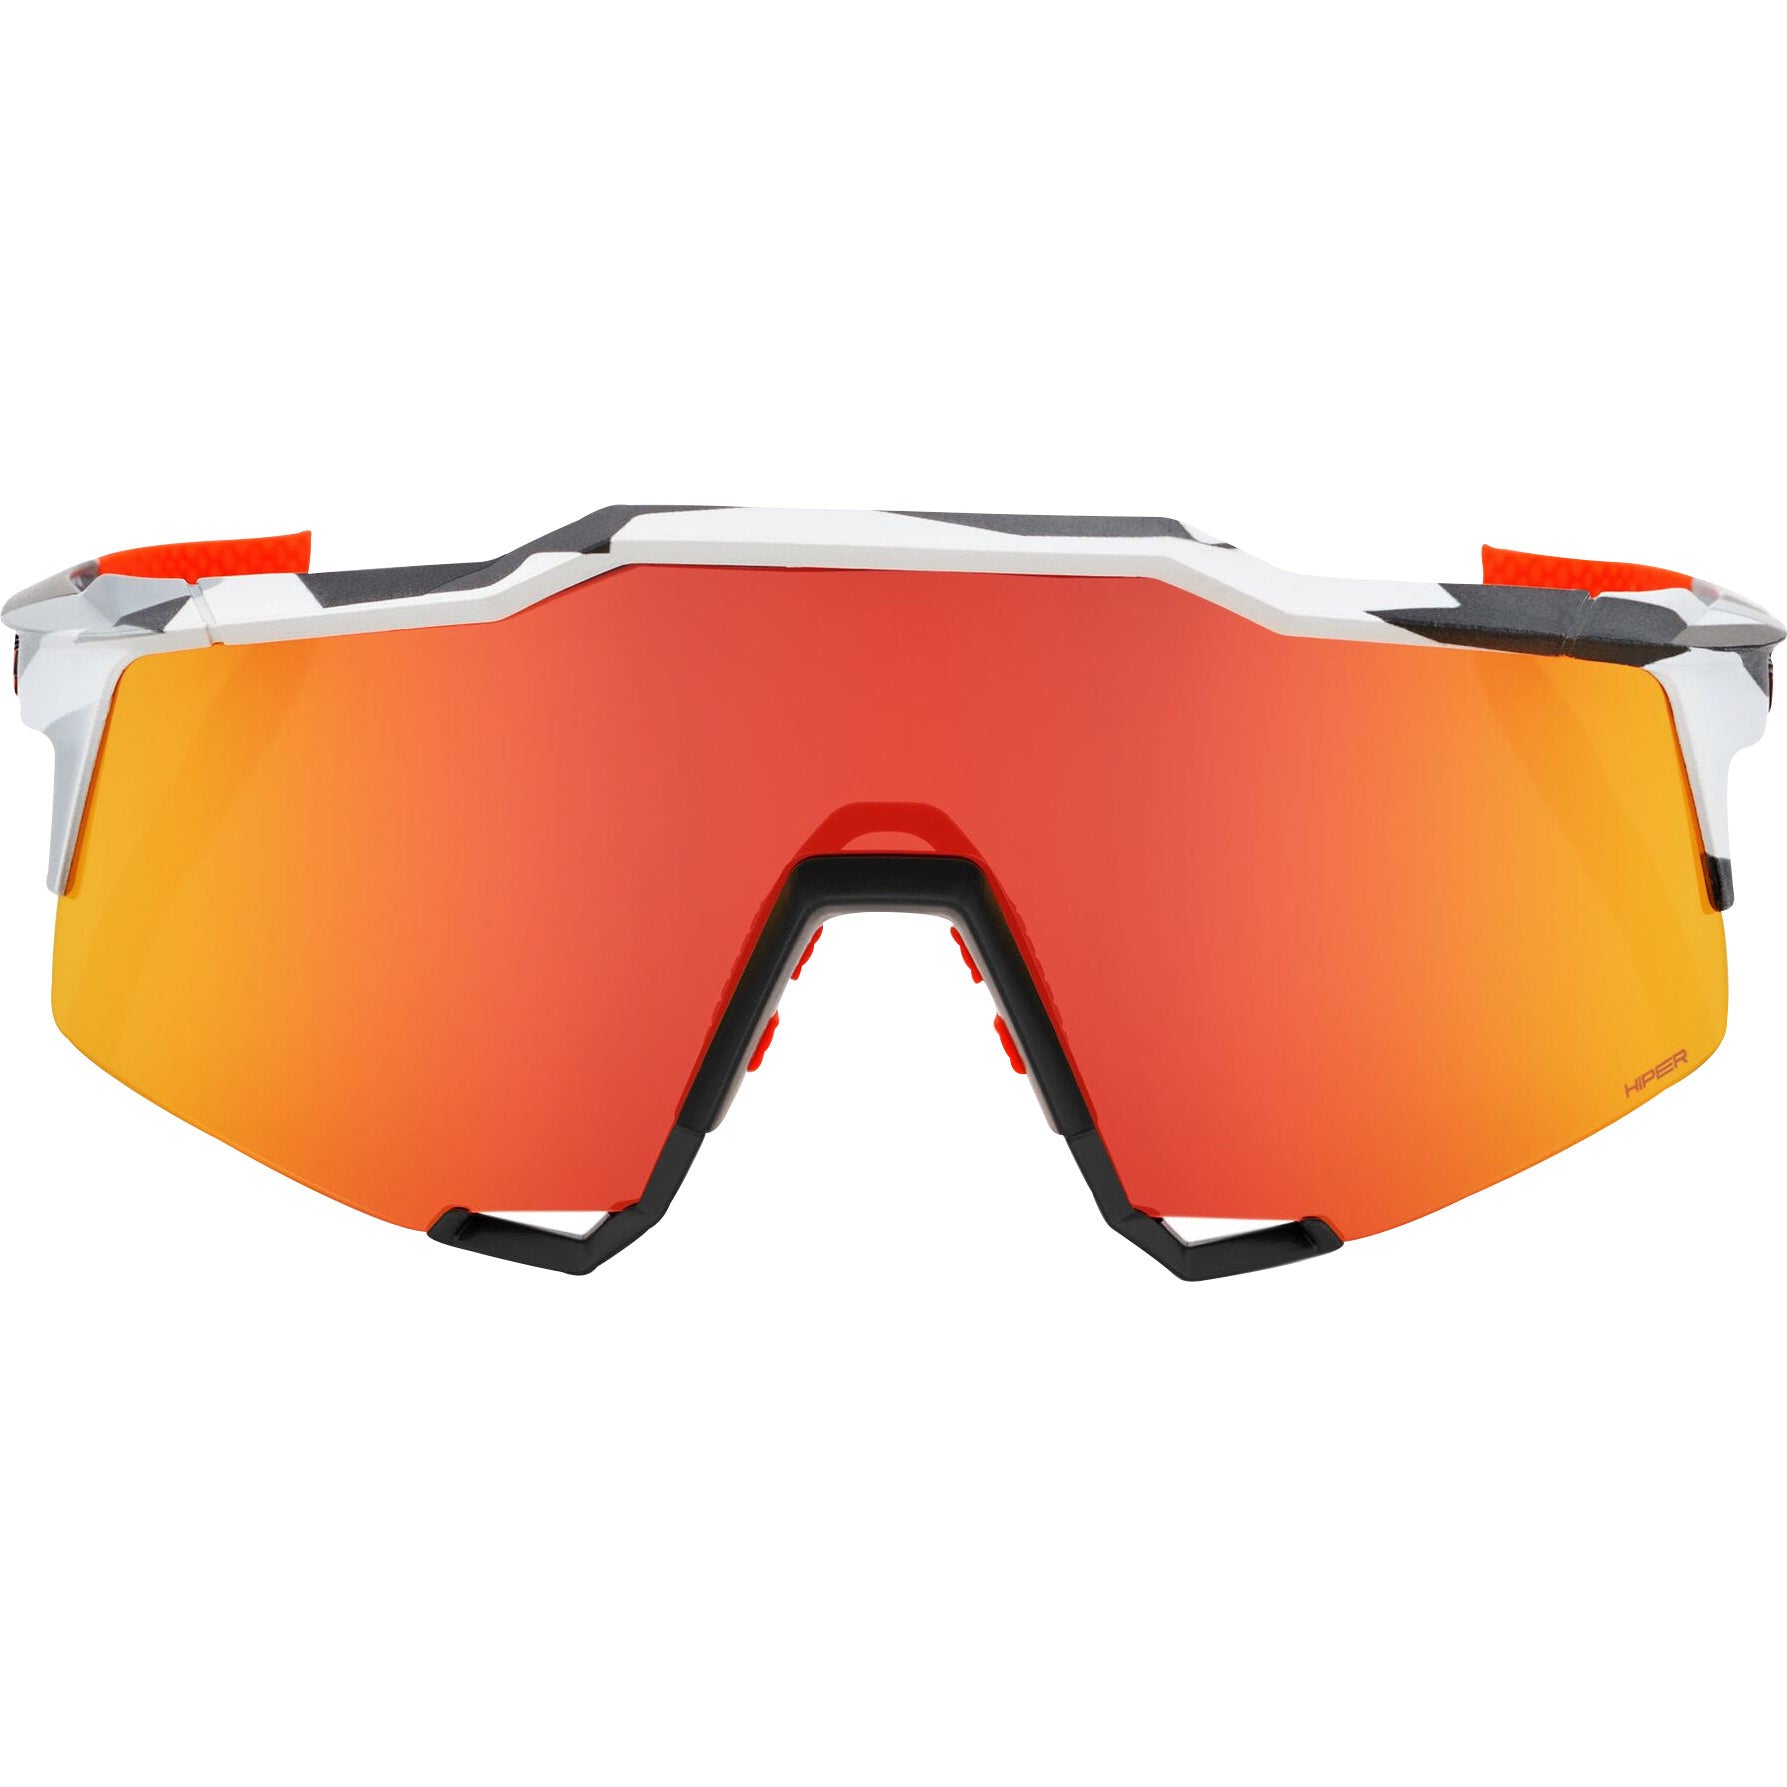 Speedcraft Grey Camo Sunglasses Op6000700010 Front - Front View